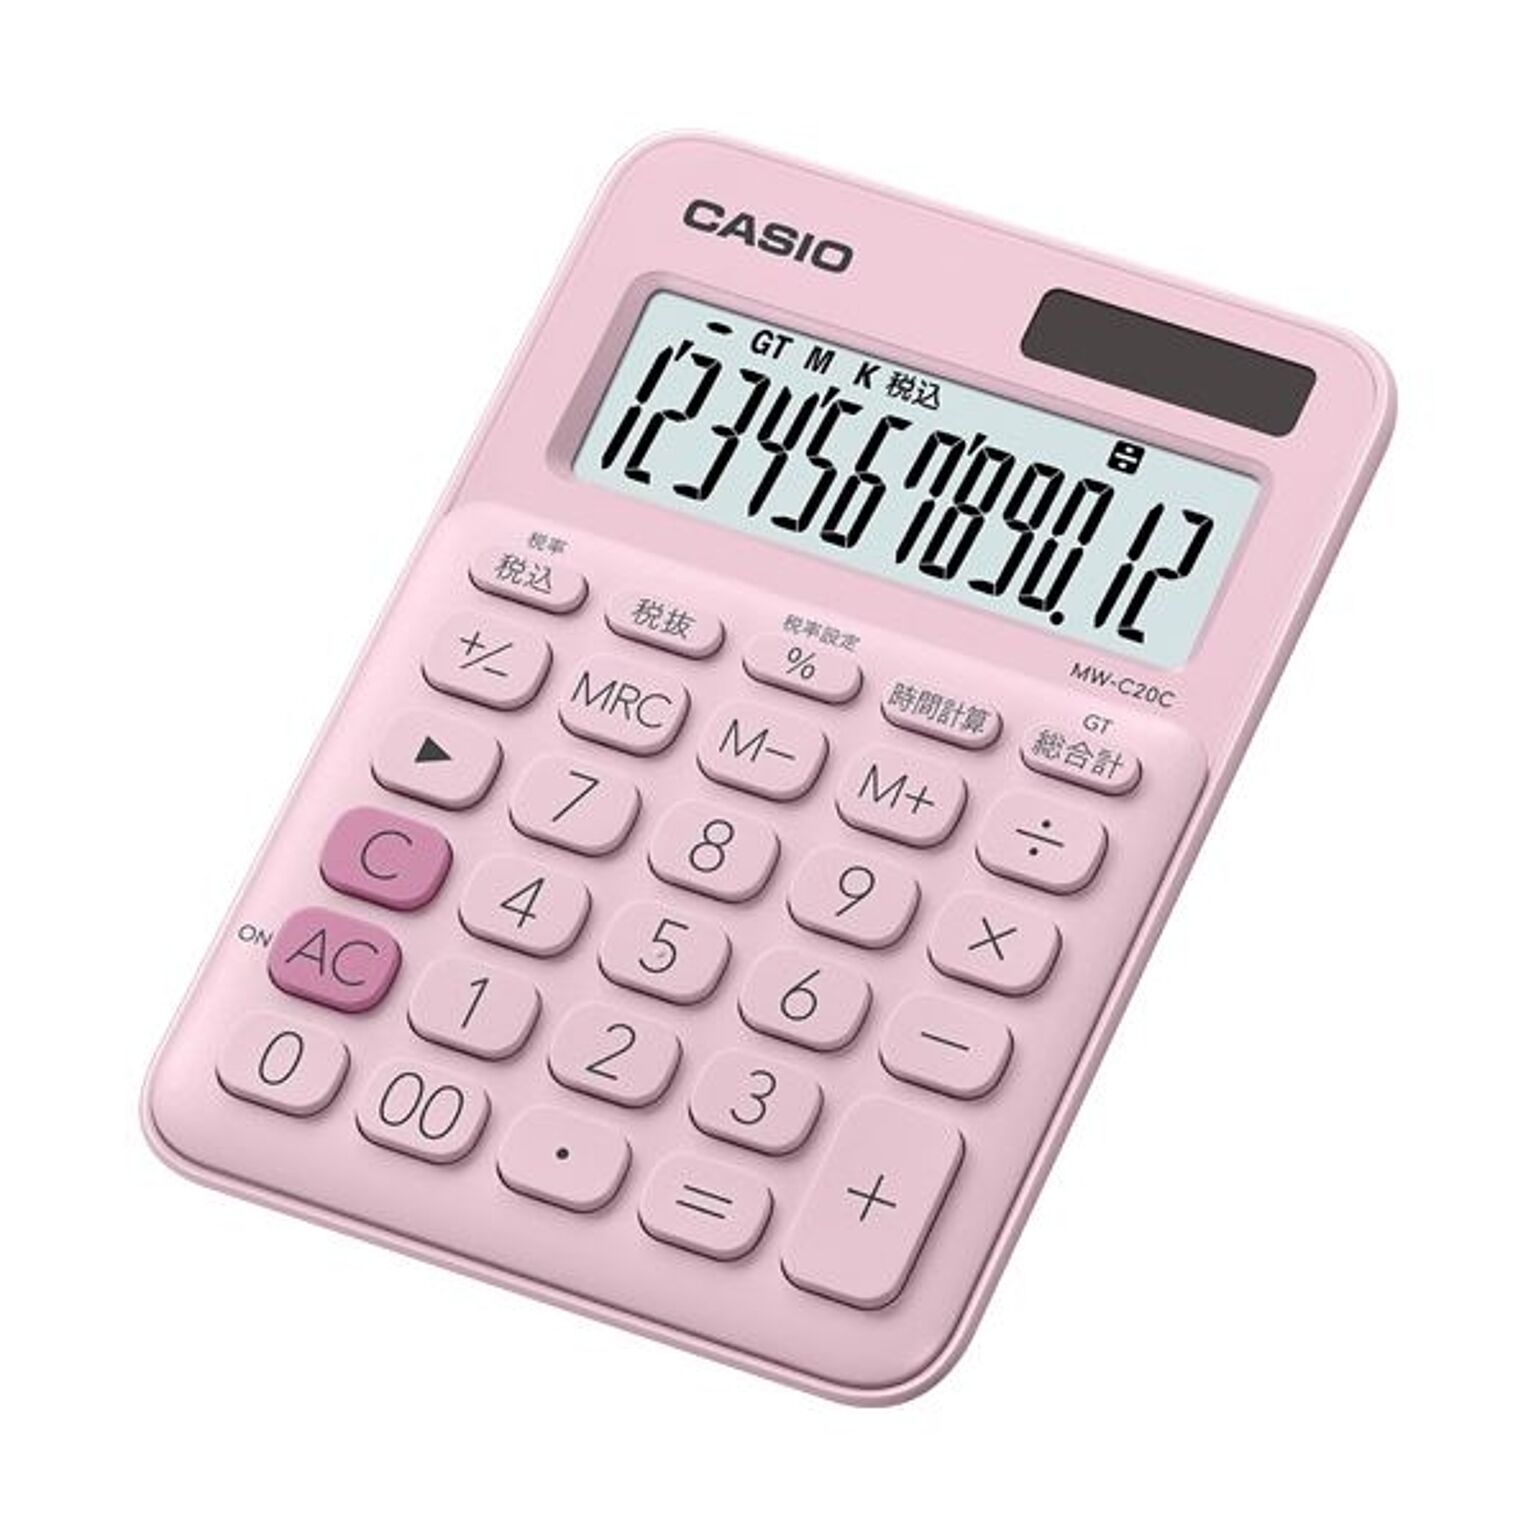 （まとめ）カシオ カラフル電卓 ミニジャストタイプ12桁 ペールピンク MW-C20C-PK-N 1台【×5セット】